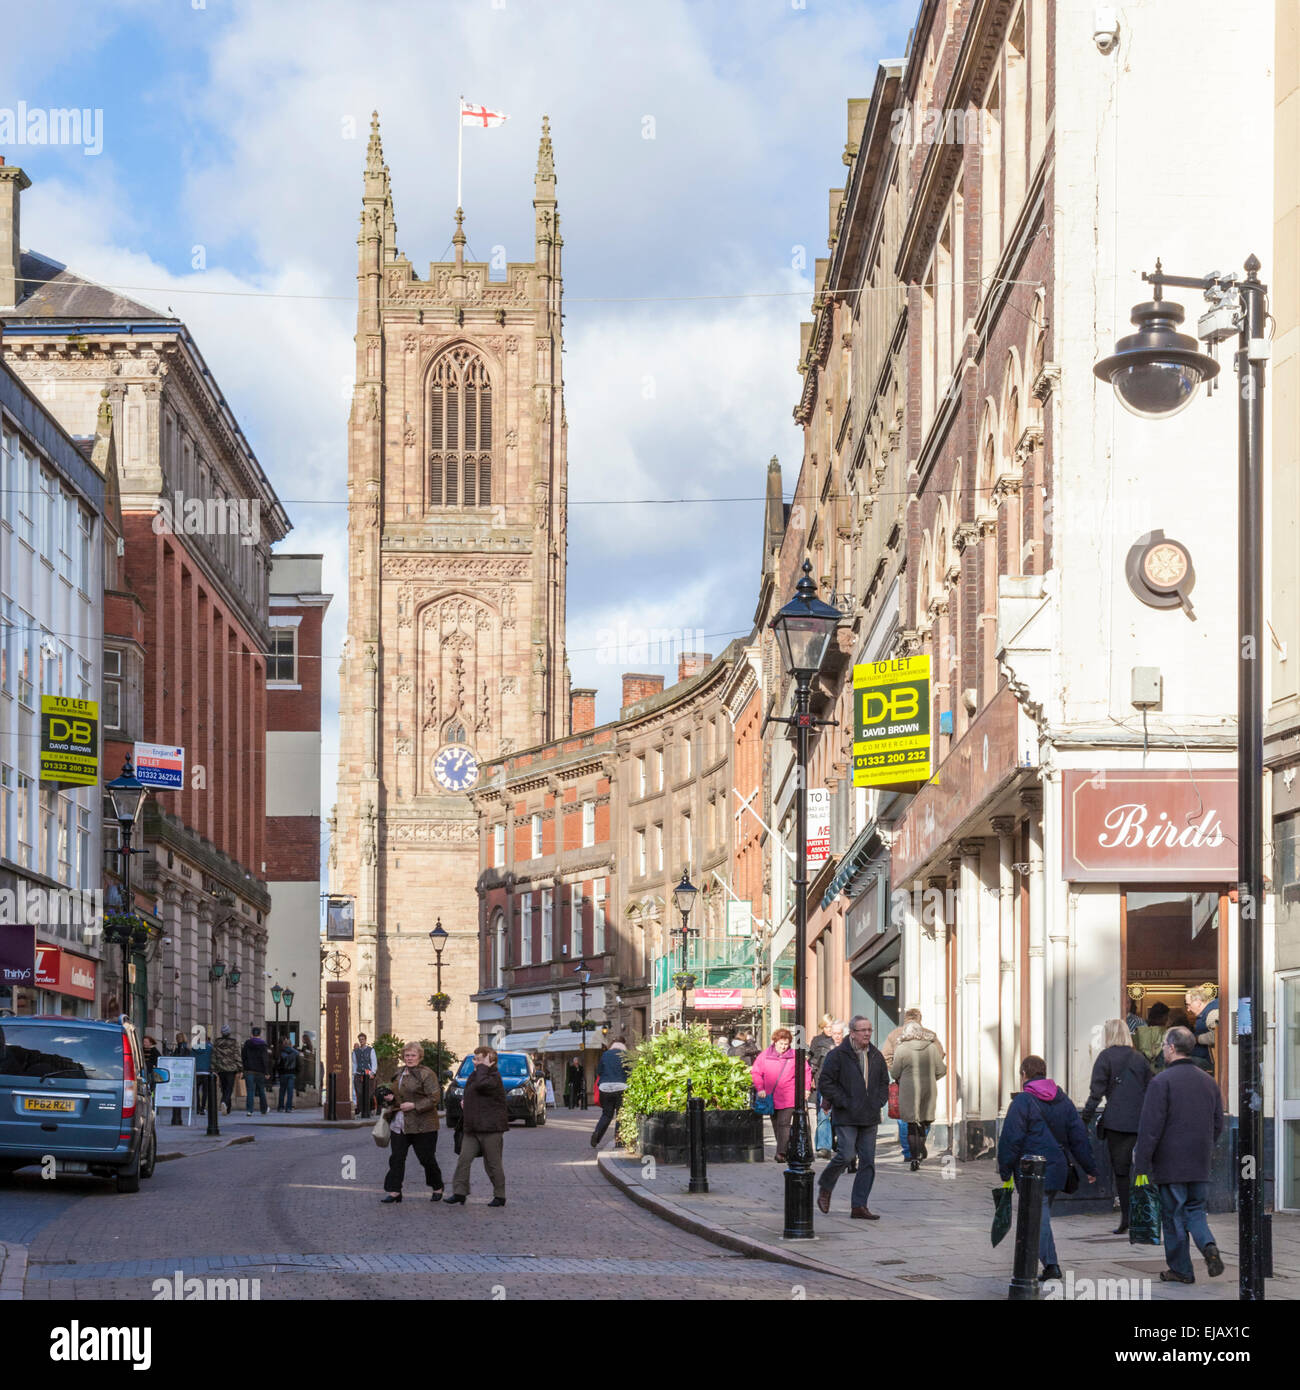 Quartier de la cathédrale, Derby, Royaume-Uni. Les personnes qui visitent les magasins porte de fer dans le centre-ville de Derby, en Angleterre, avec la cathédrale de Derby dans la distance Banque D'Images